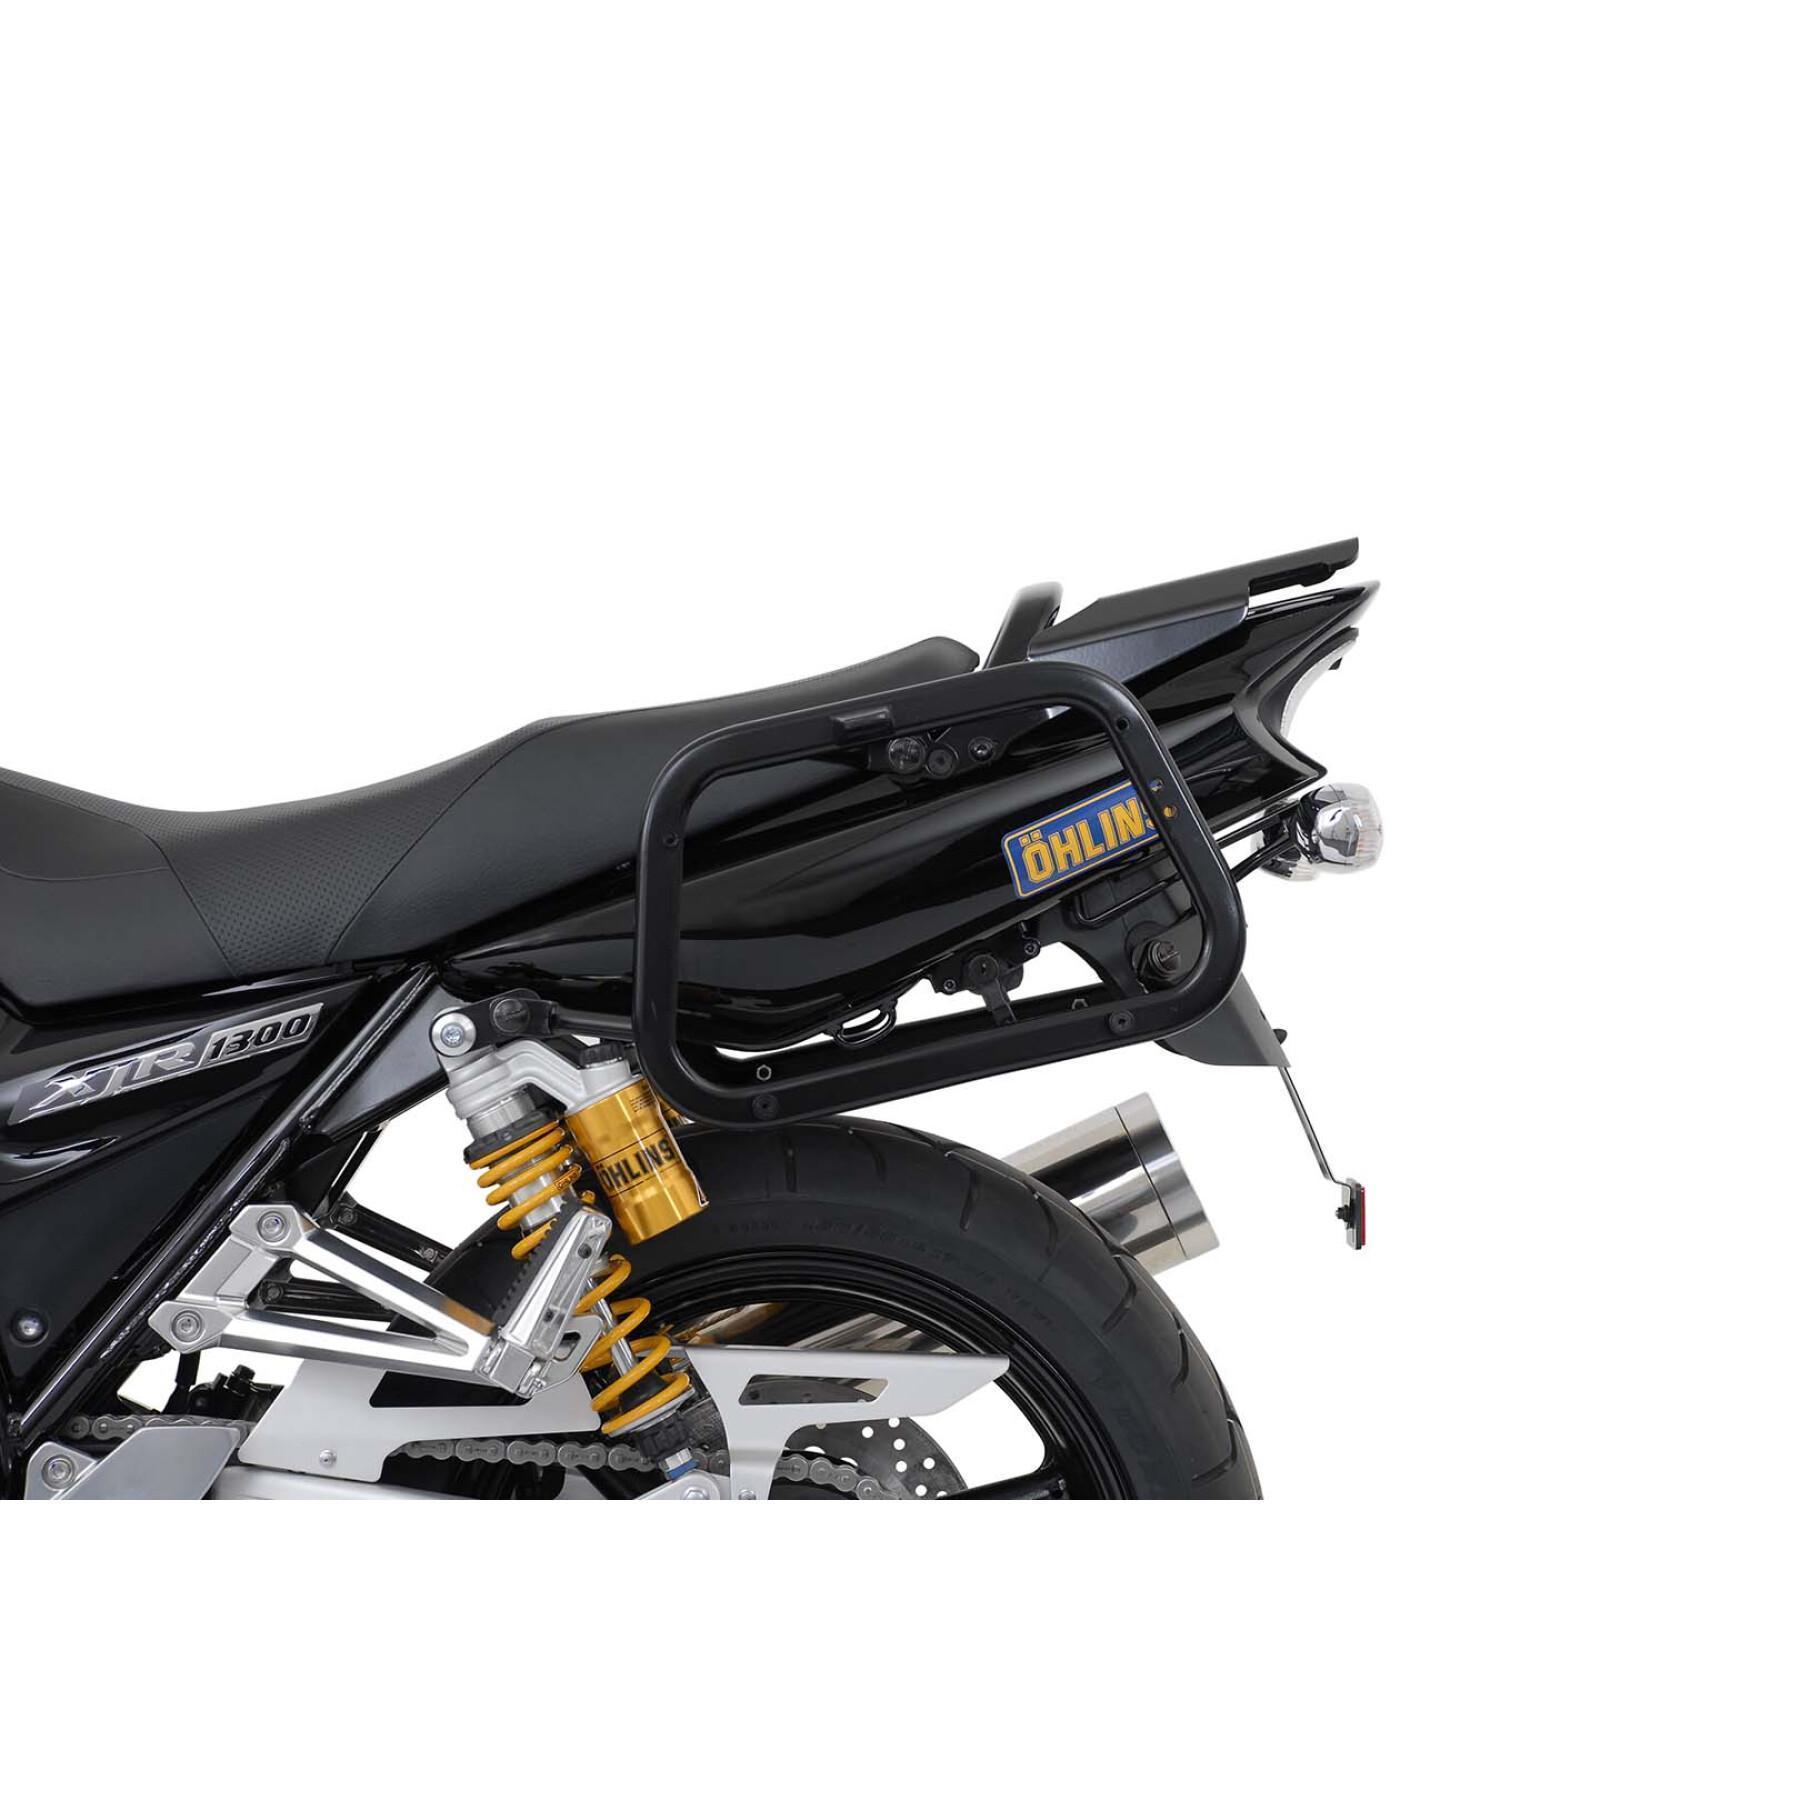 Soporte de la maleta lateral de la moto Sw-Motech Evo. Yamaha Xjr 1200 (95-99)Xjr 1300 (98-14)